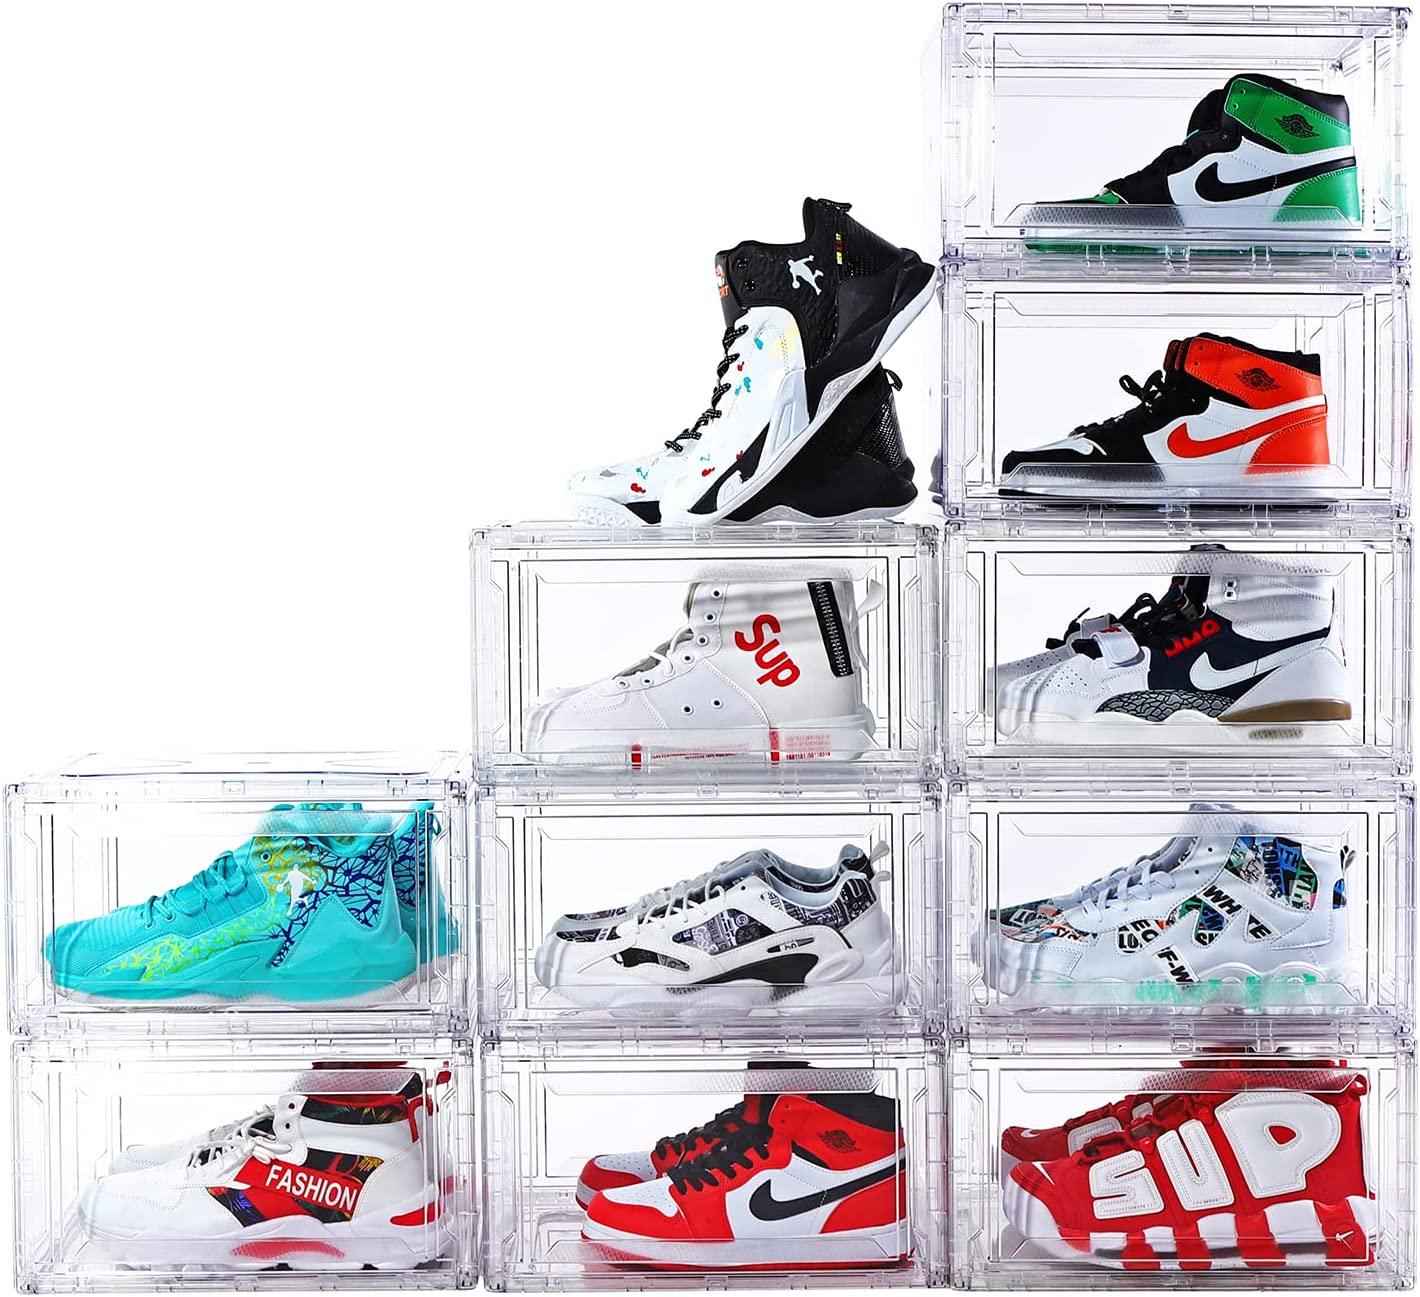 Comprar caja de zapatos, caja de zapatos Precios, caja de zapatos Marcas, caja de zapatos Fabricante, caja de zapatos Citas, caja de zapatos Empresa.